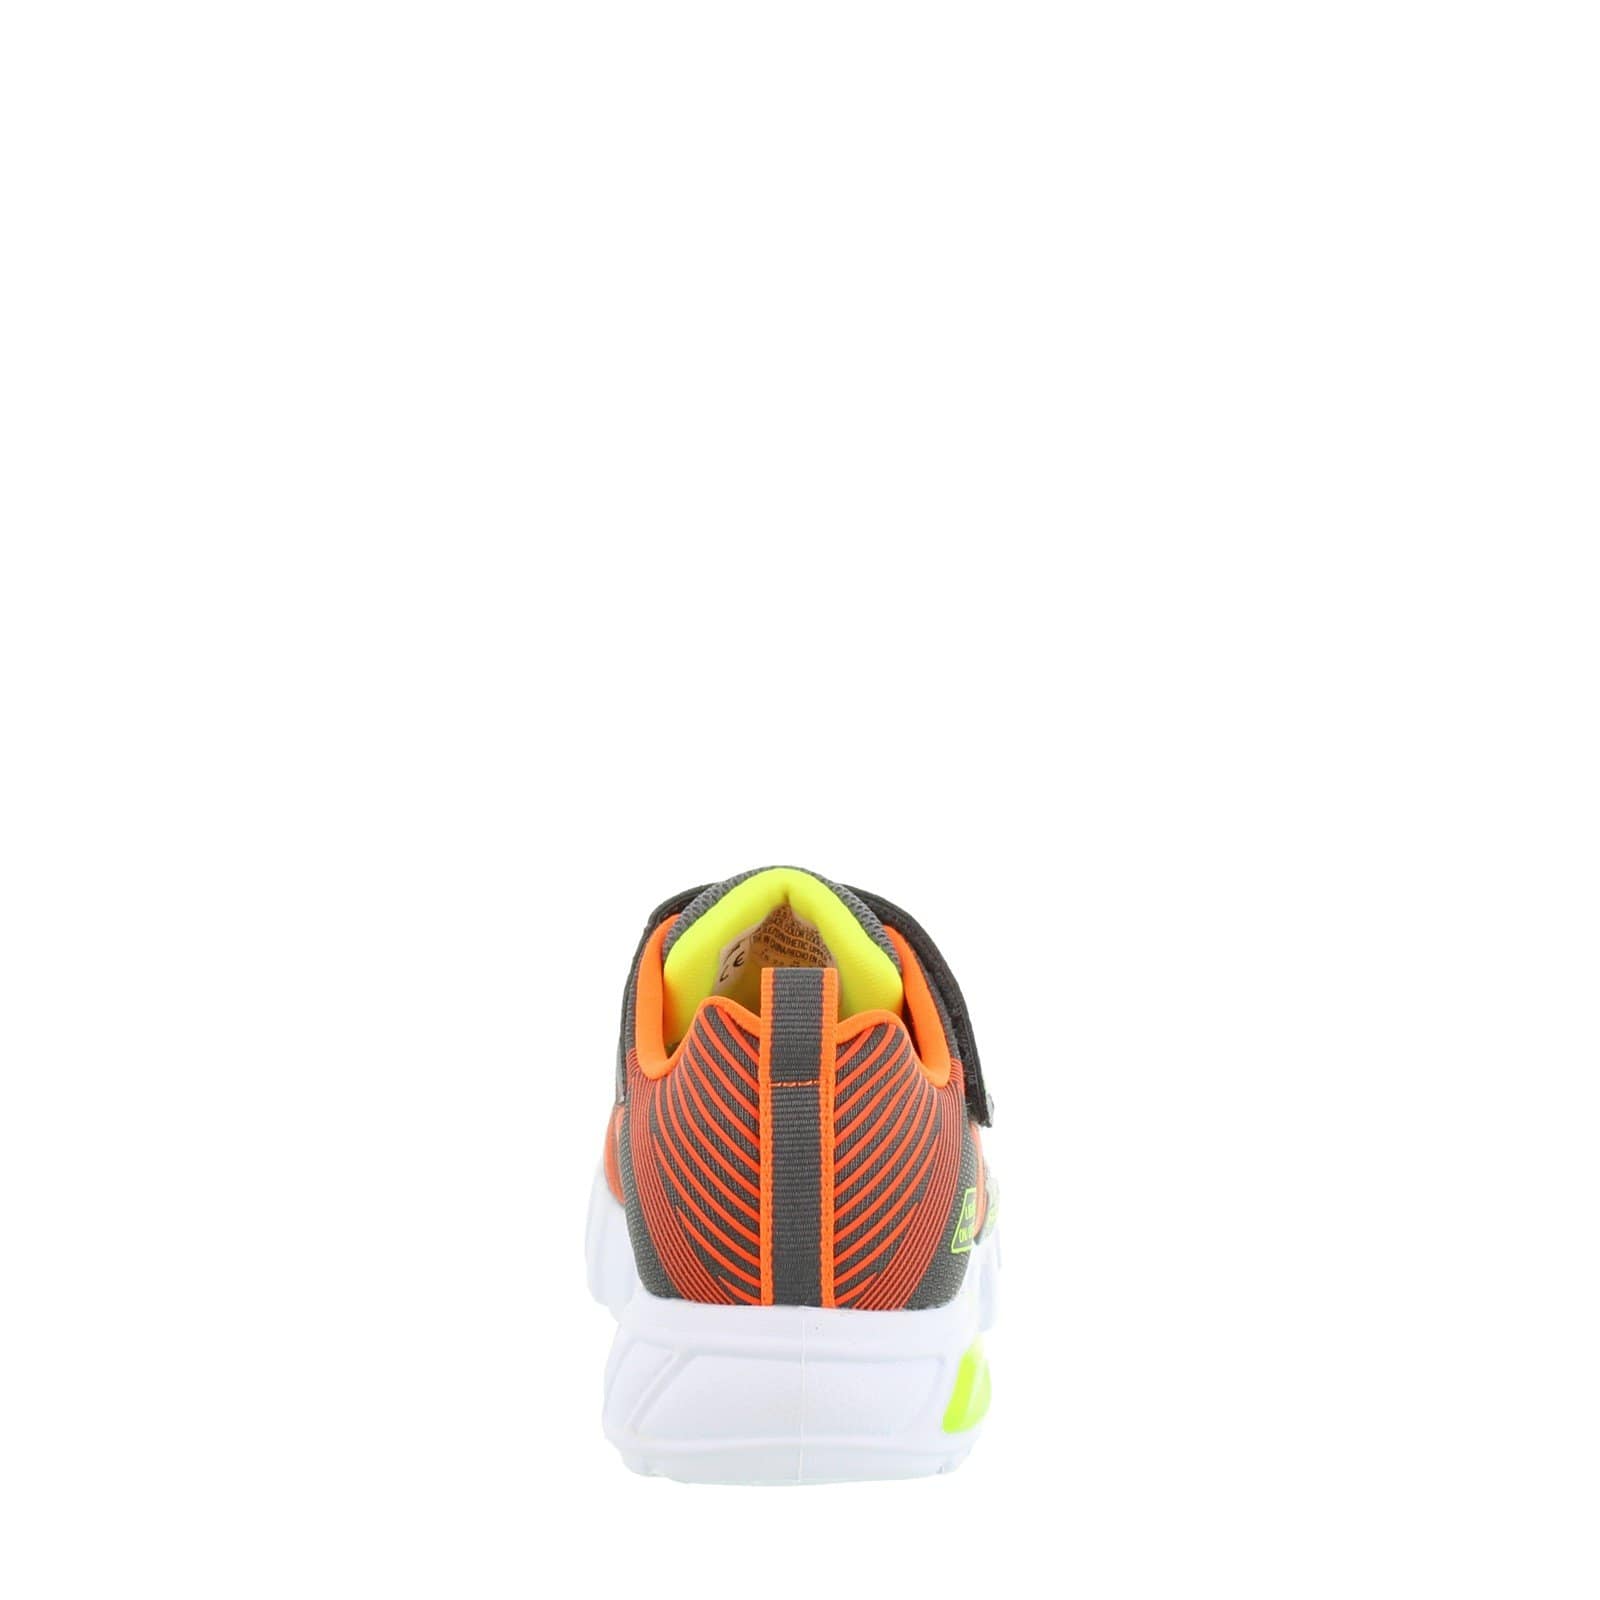 SKECHERS Kids Shoes 30 / Grey / Orange S Lights Flex - Glow Sneaker